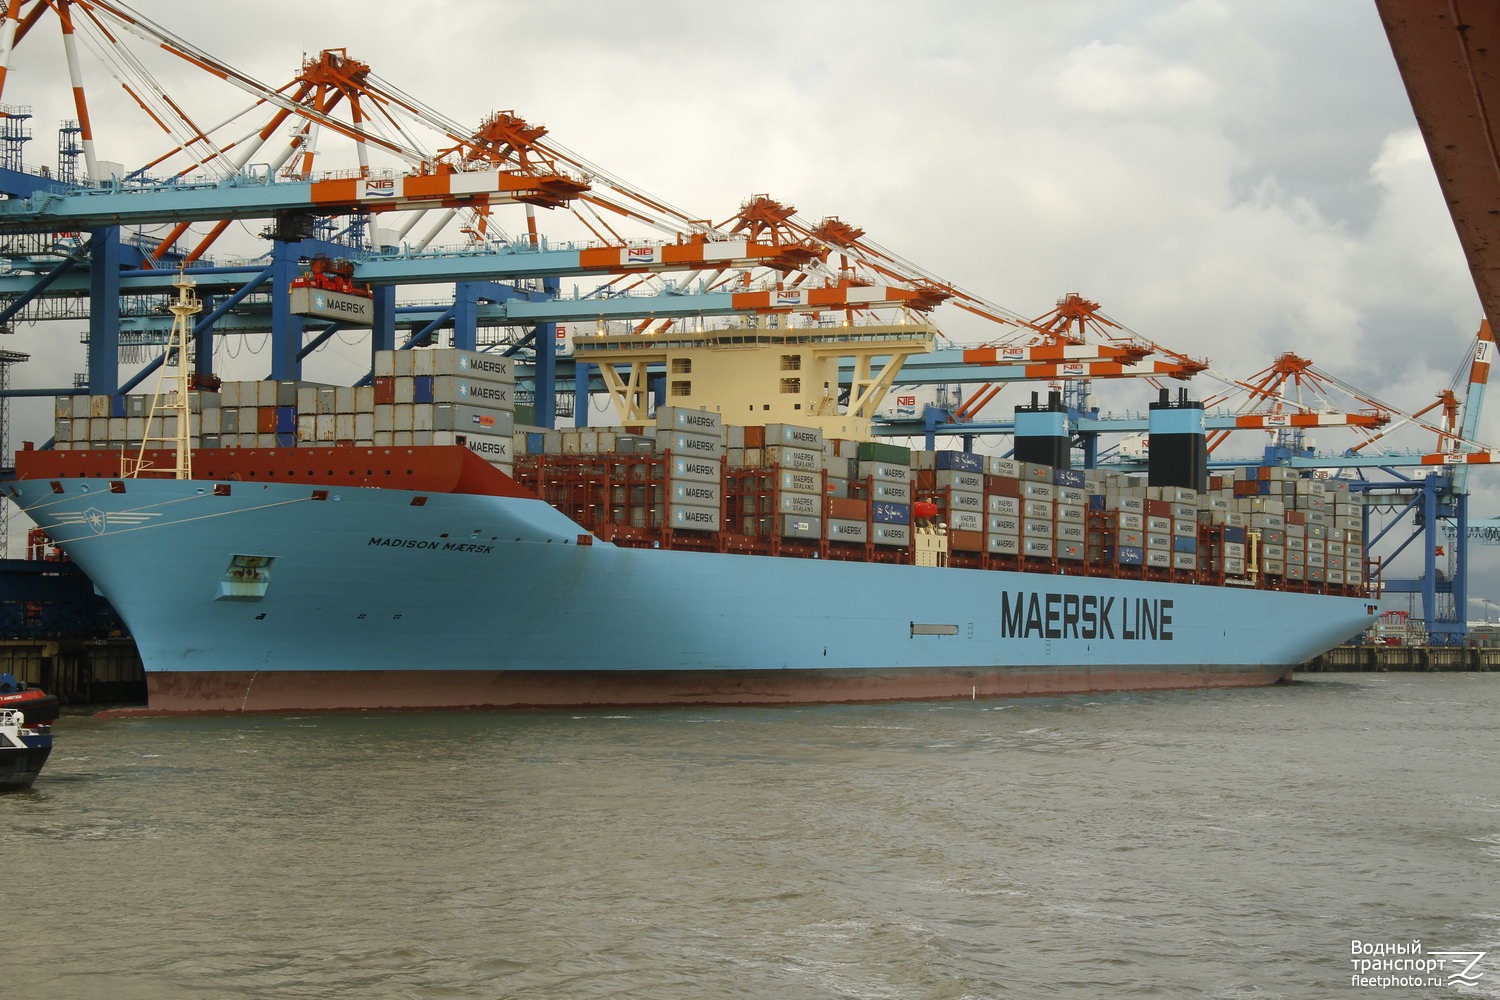 Madison Maersk